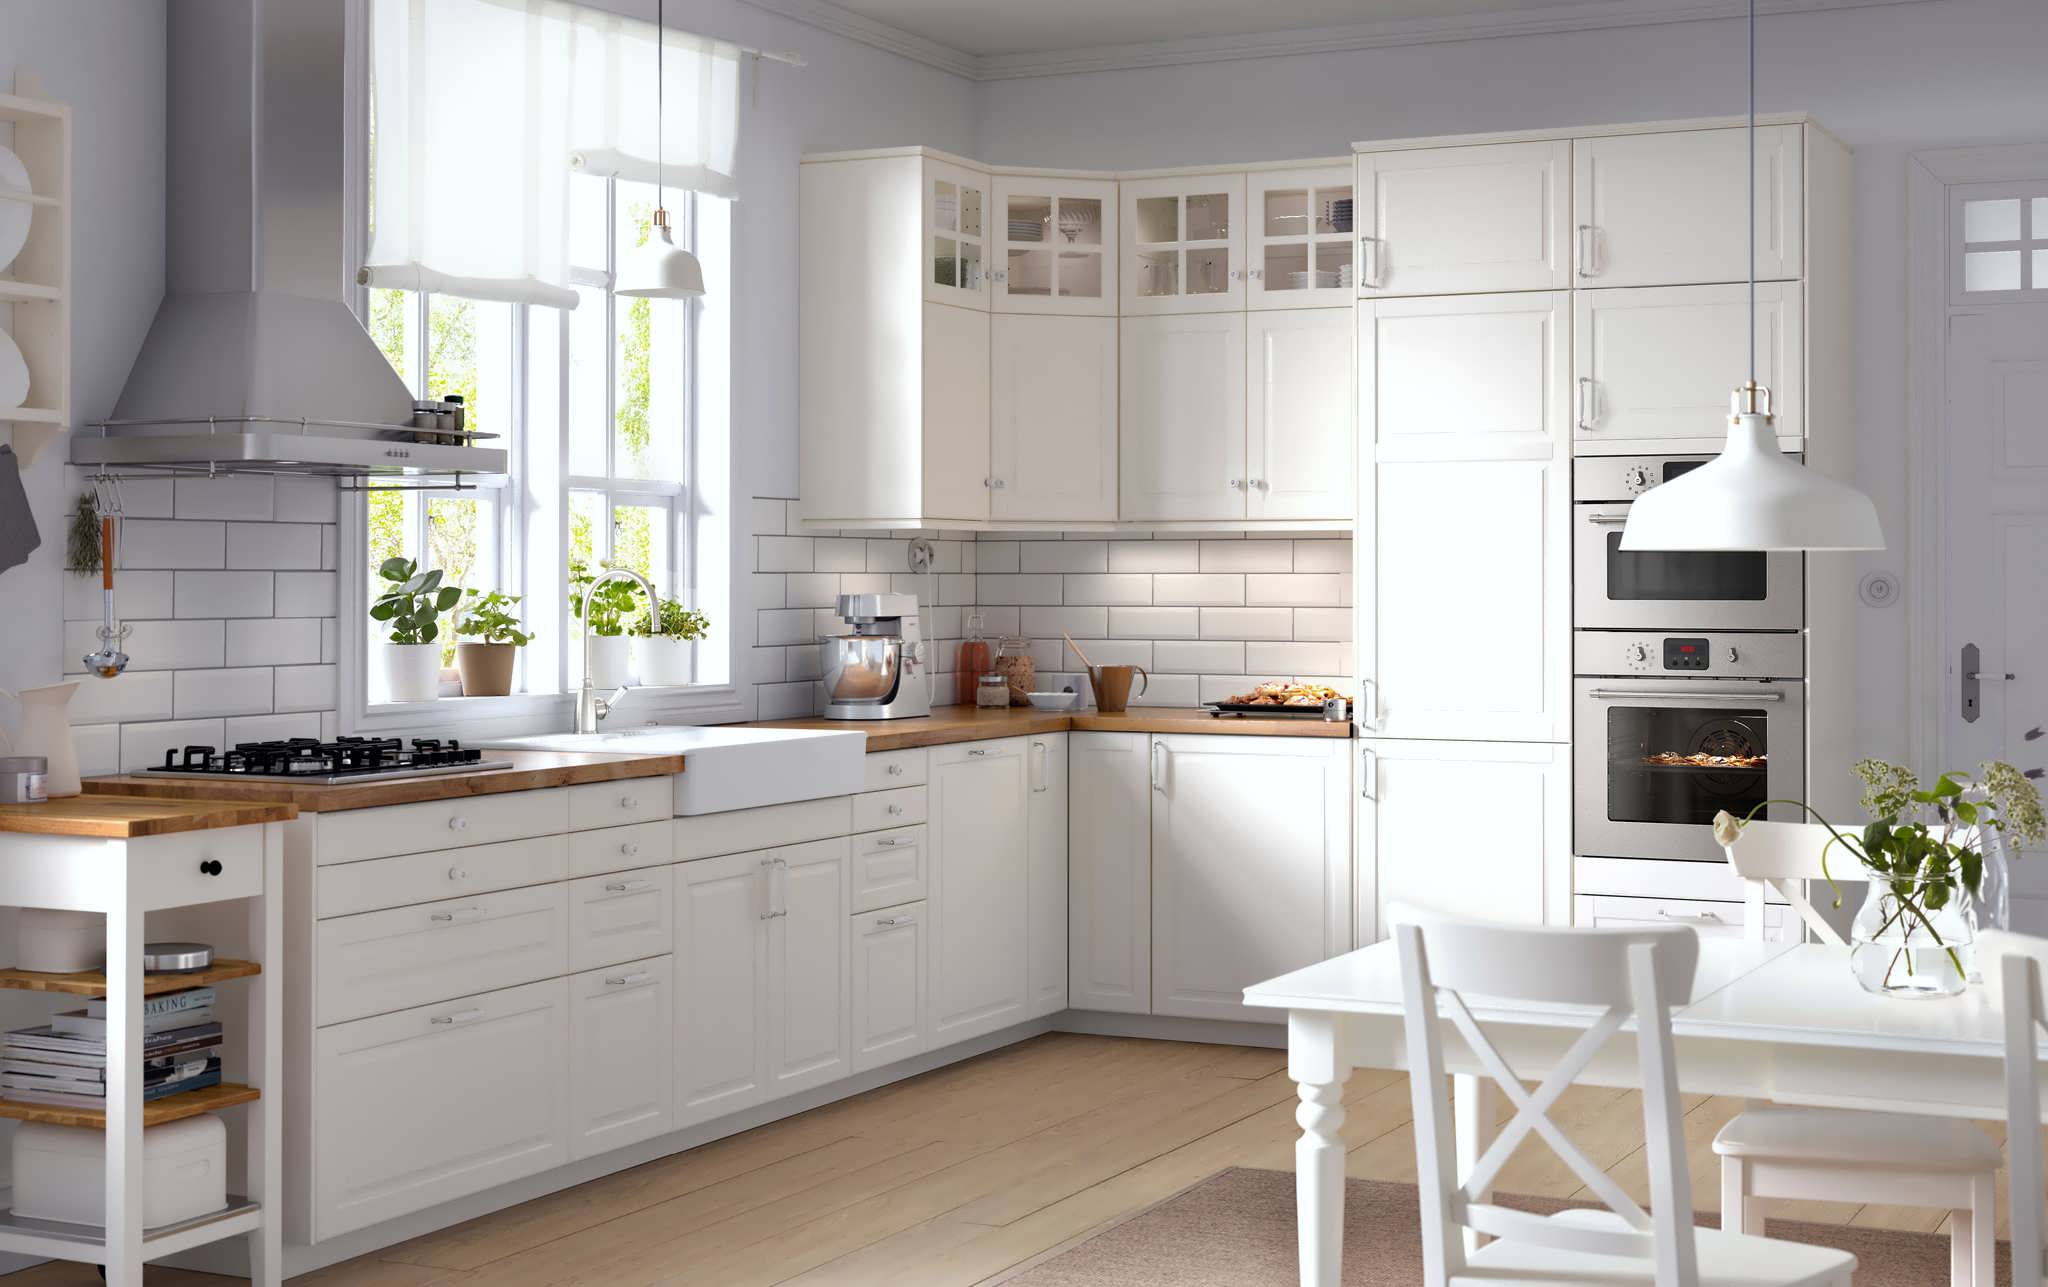 space-kitchen-modern-kitchen-ideas-kitchen-color-design-contemporary-kitchens-london.jpg